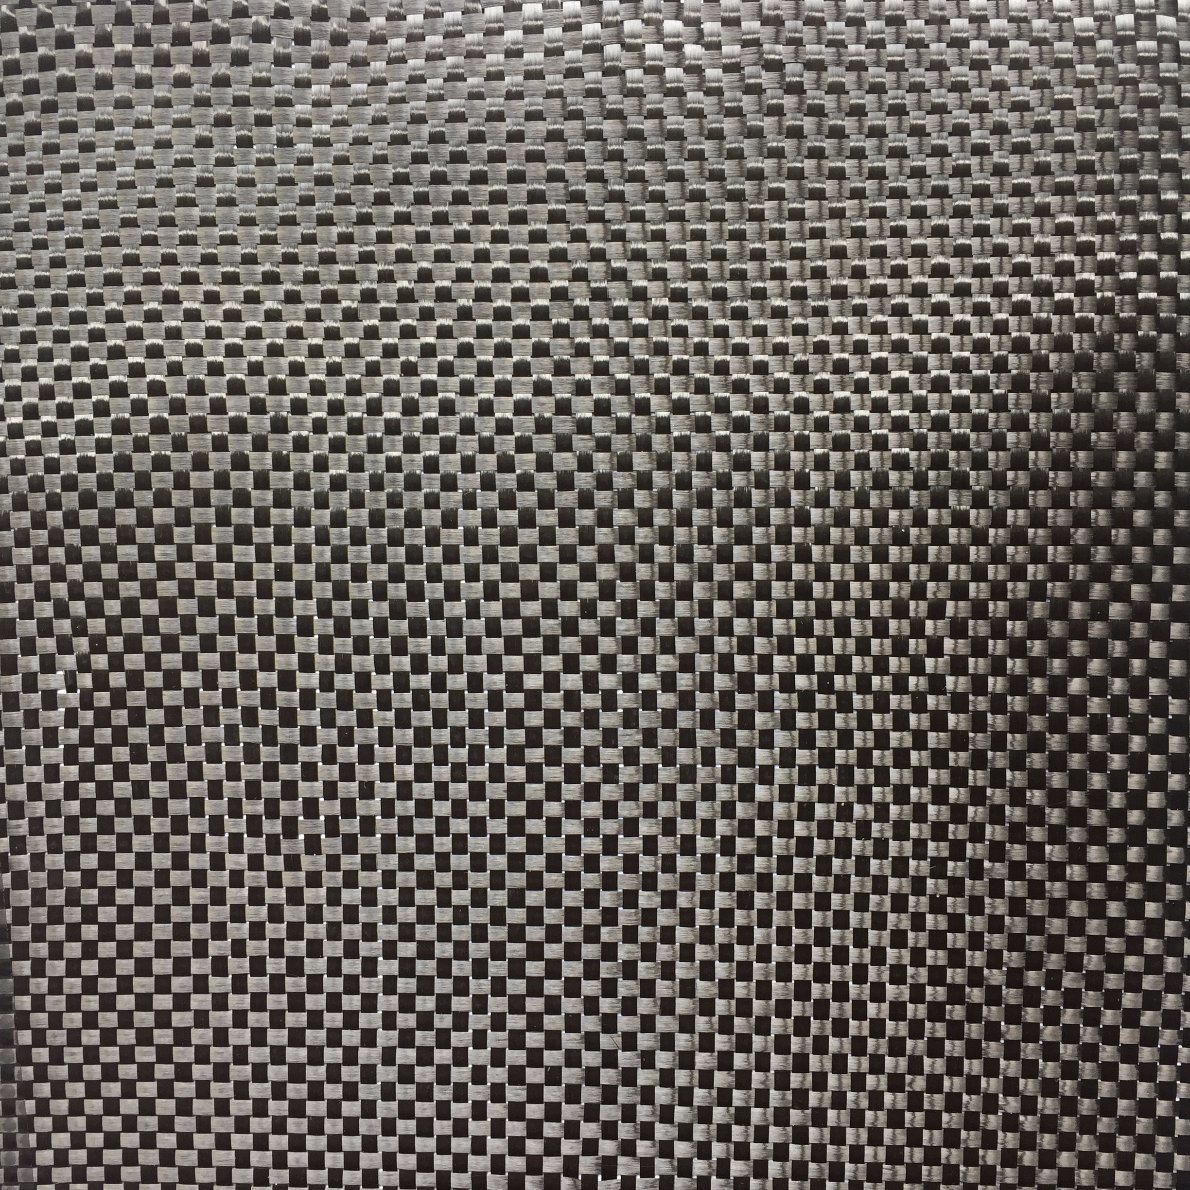 3K Plain Carbon Fiber Fabric for Car Parts